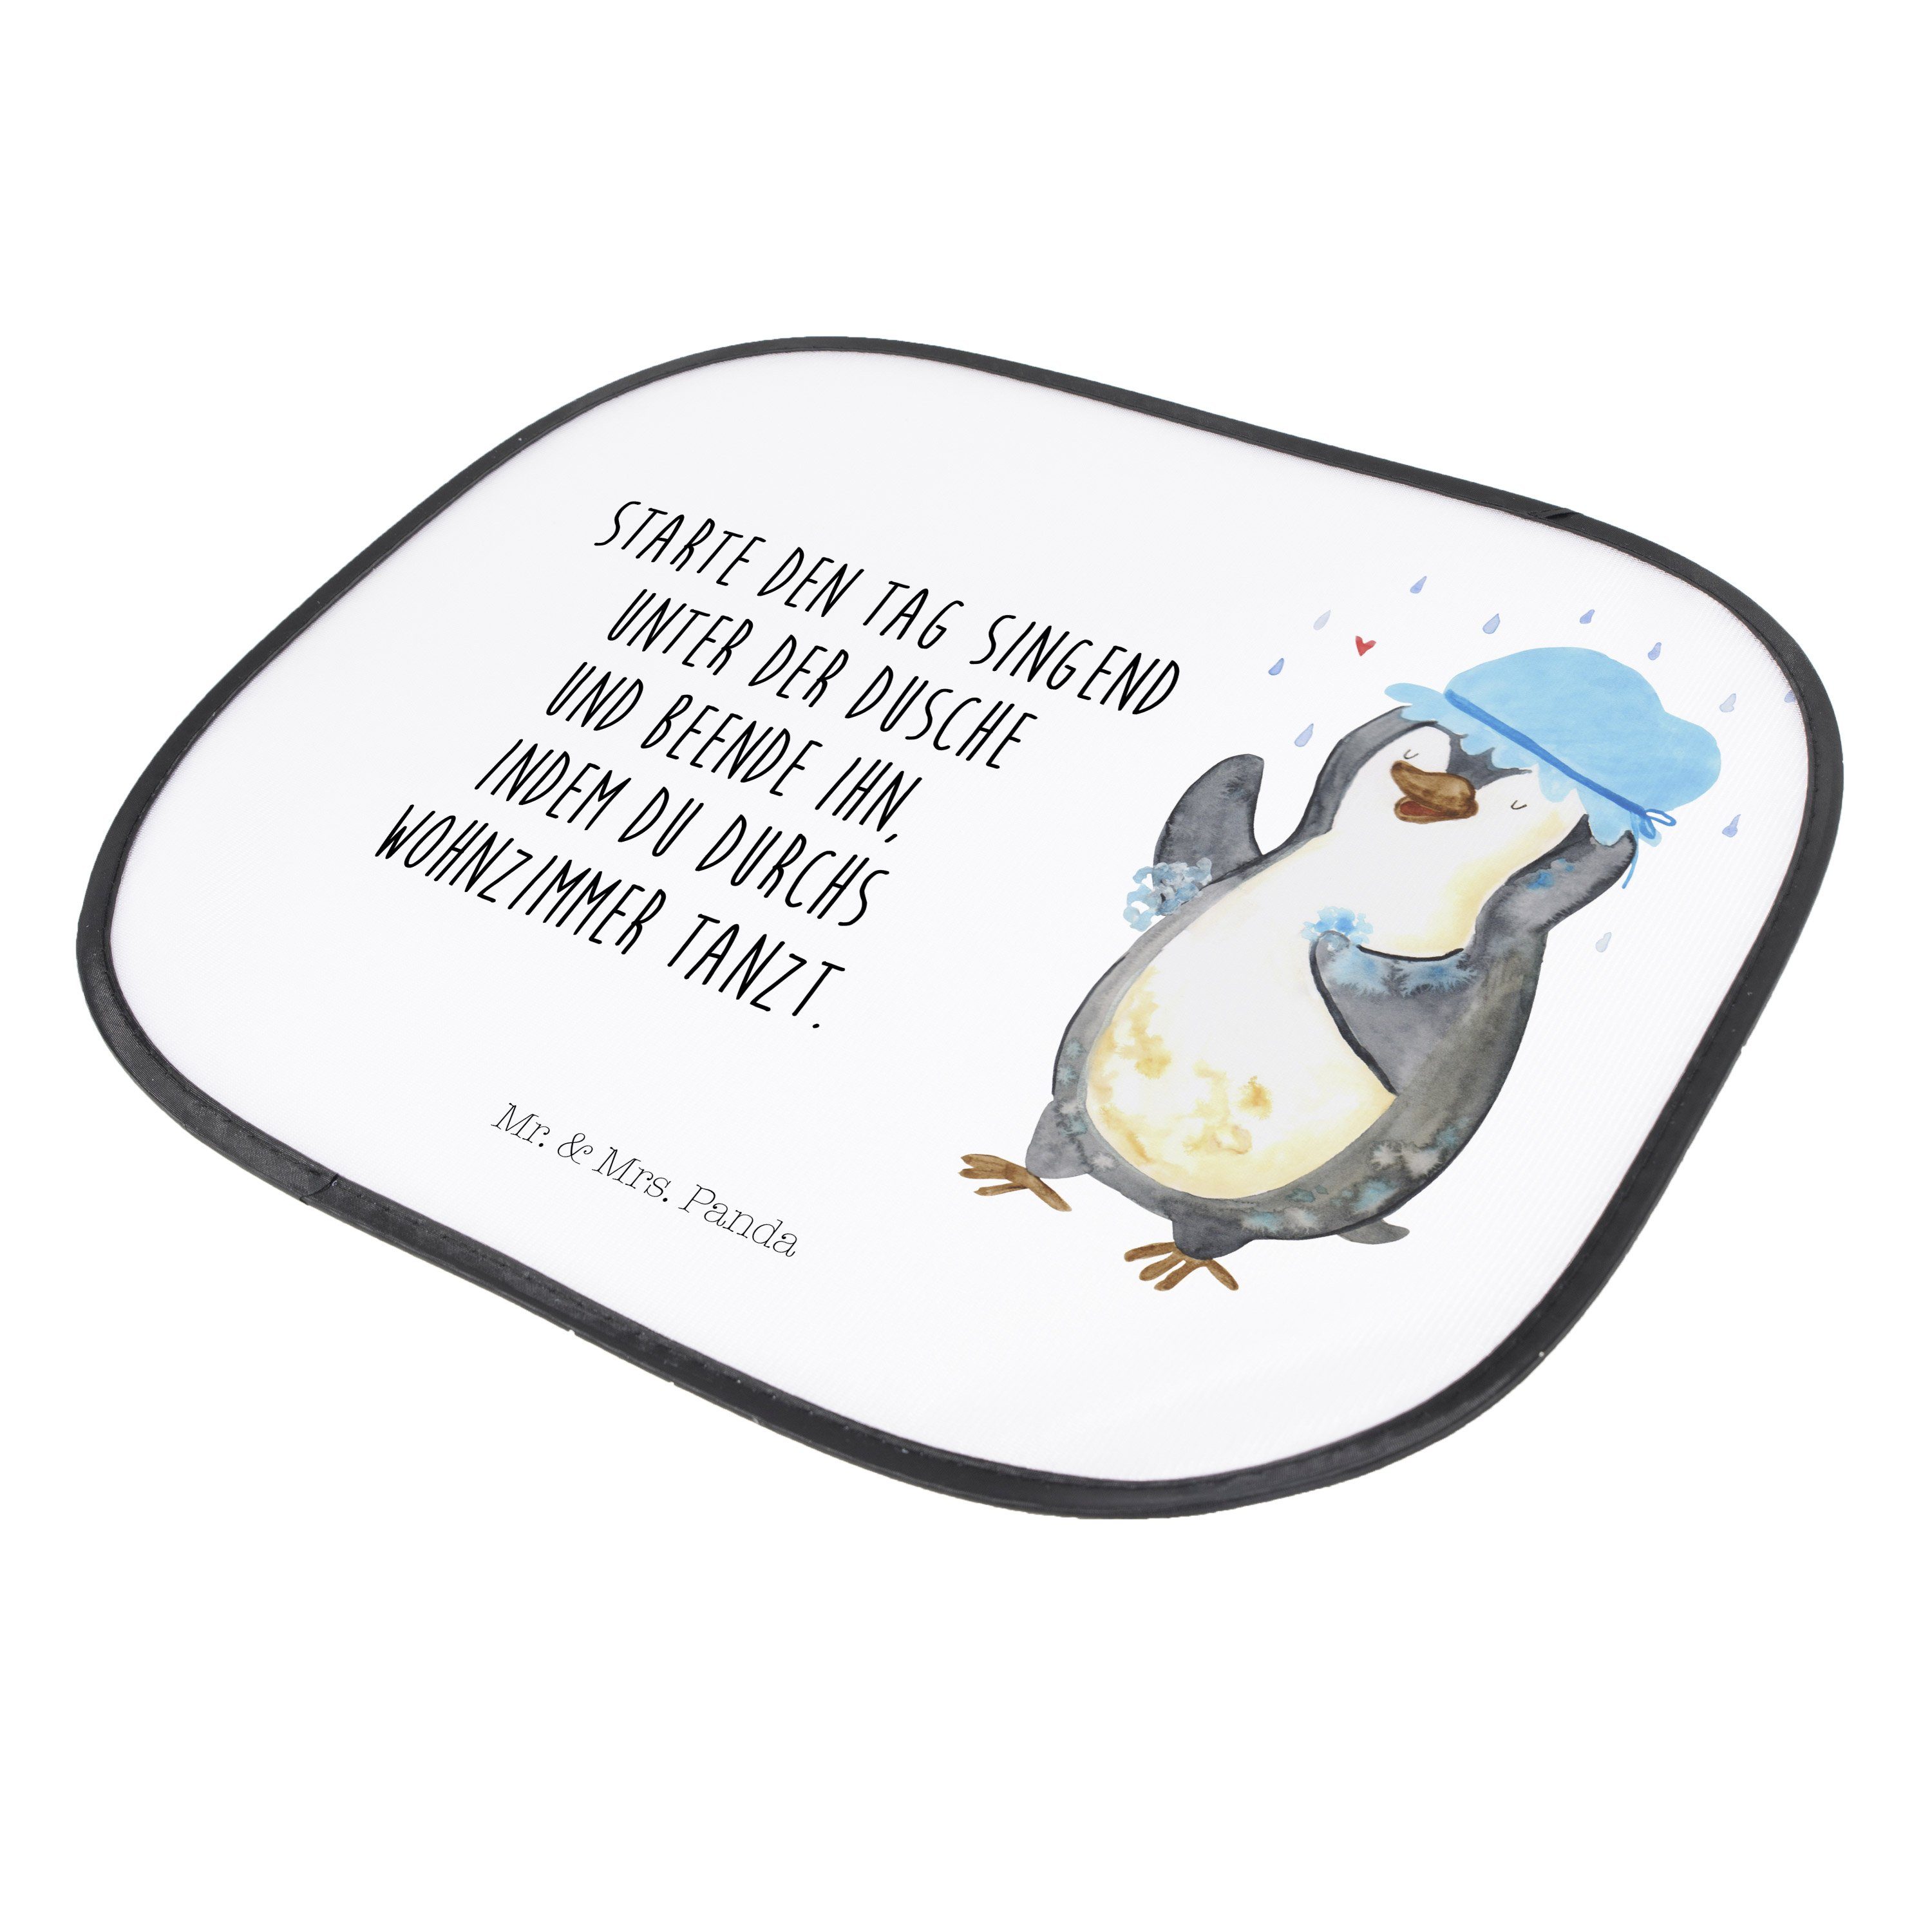 Sonnenschutz Pinguin duscht - Weiß Mr. Panda, - Sonnenschutz, Geschenk, Sonnen, Seidenmatt & Auto Neustart, Mrs